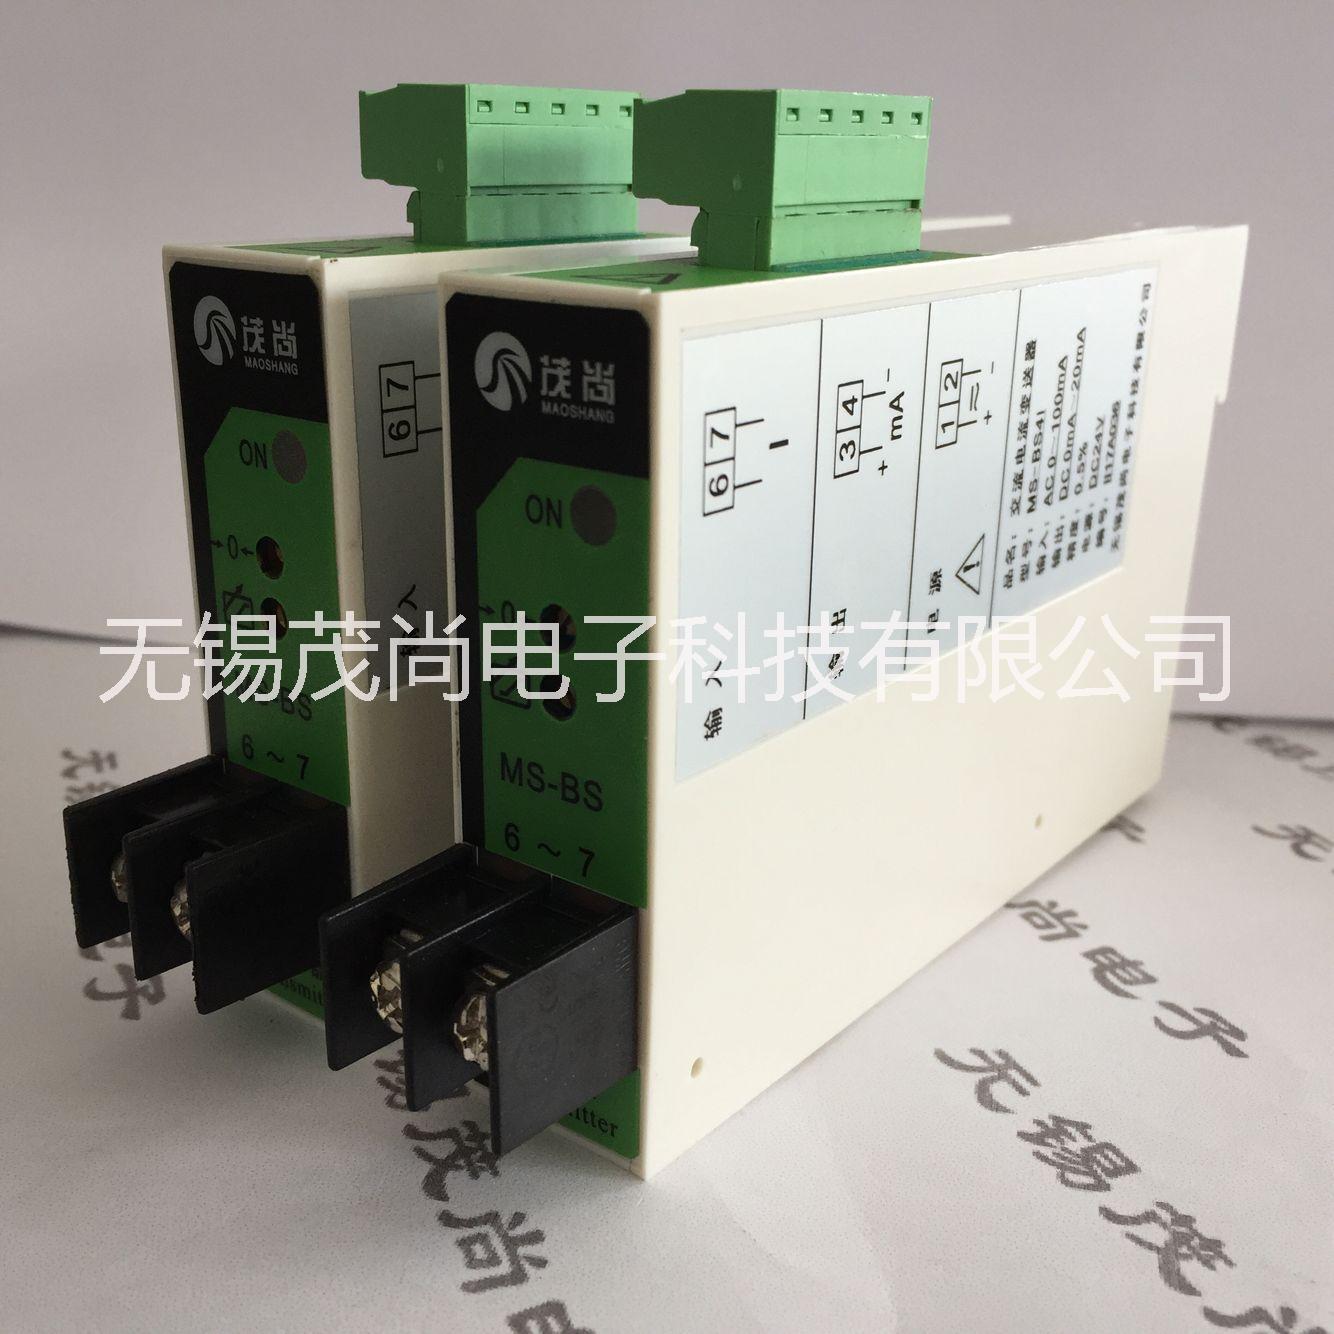 0-300V转0-20mA电压转电流模块MS-BS4U交流电压转换模块